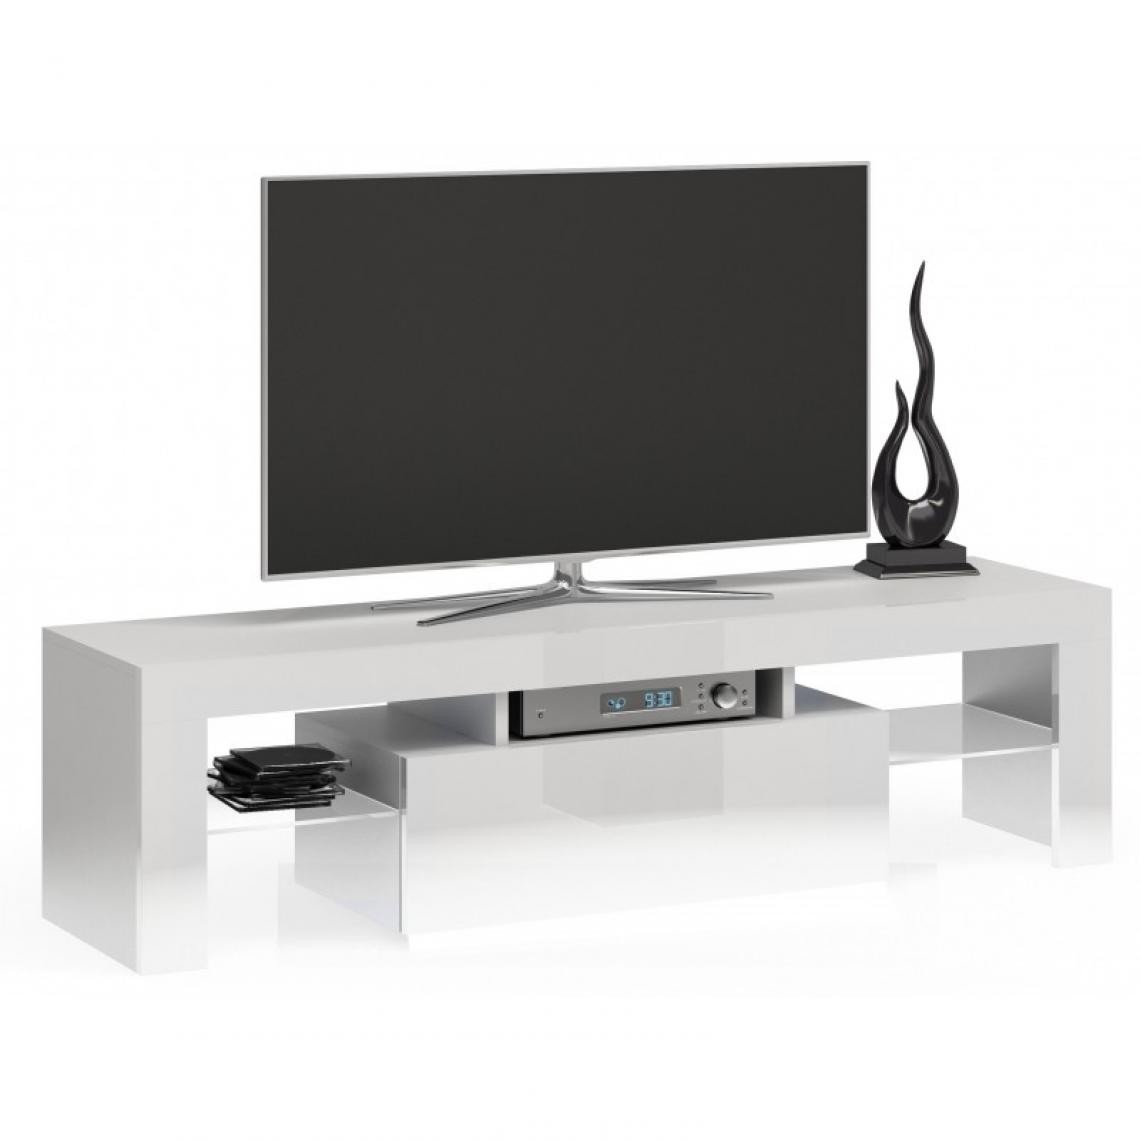 Hucoco - ROSALIE - Meuble TV moderne avec étagères en verre - Dimensions 45x140x40 - Rangement matériel audio/vidéo - Faces effet gloss - Blanc - Meubles TV, Hi-Fi